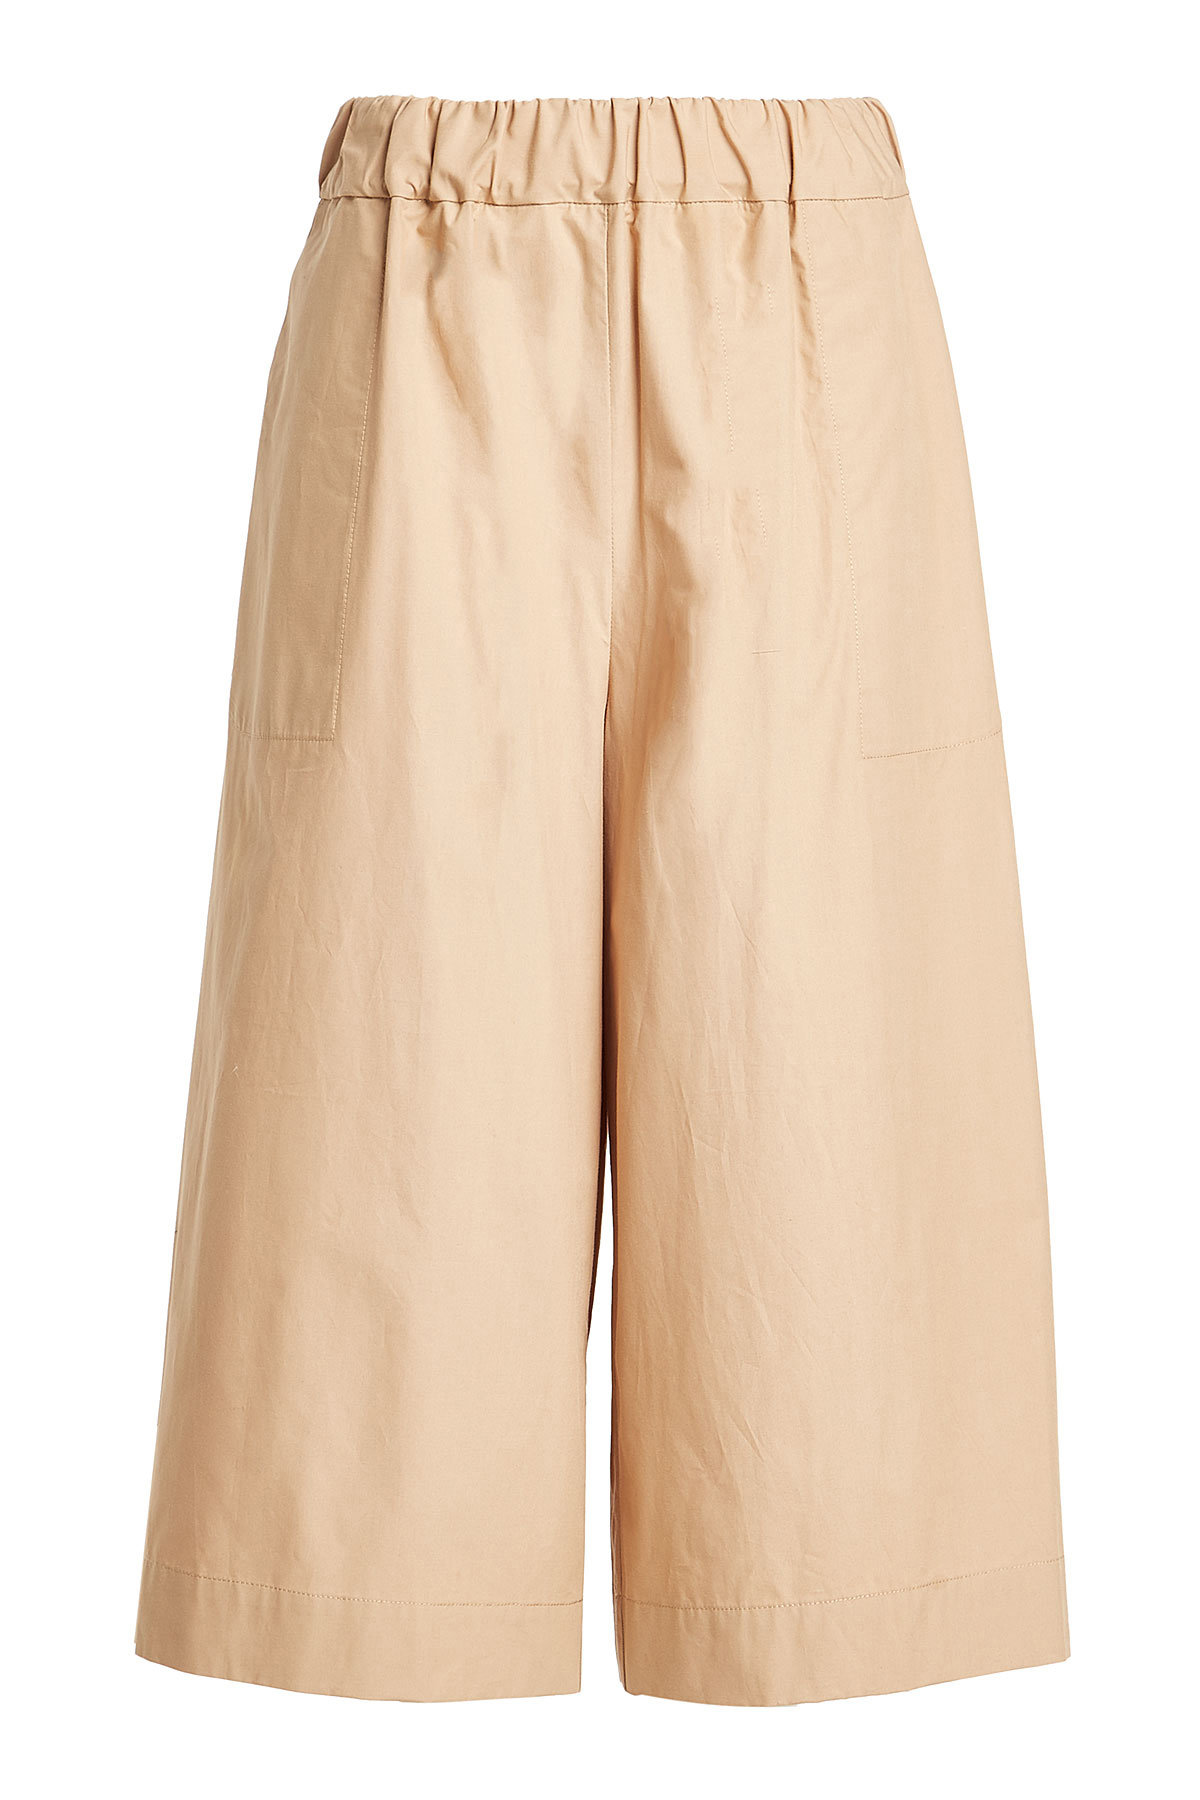 sea - 3/4 Length Cotton Pants